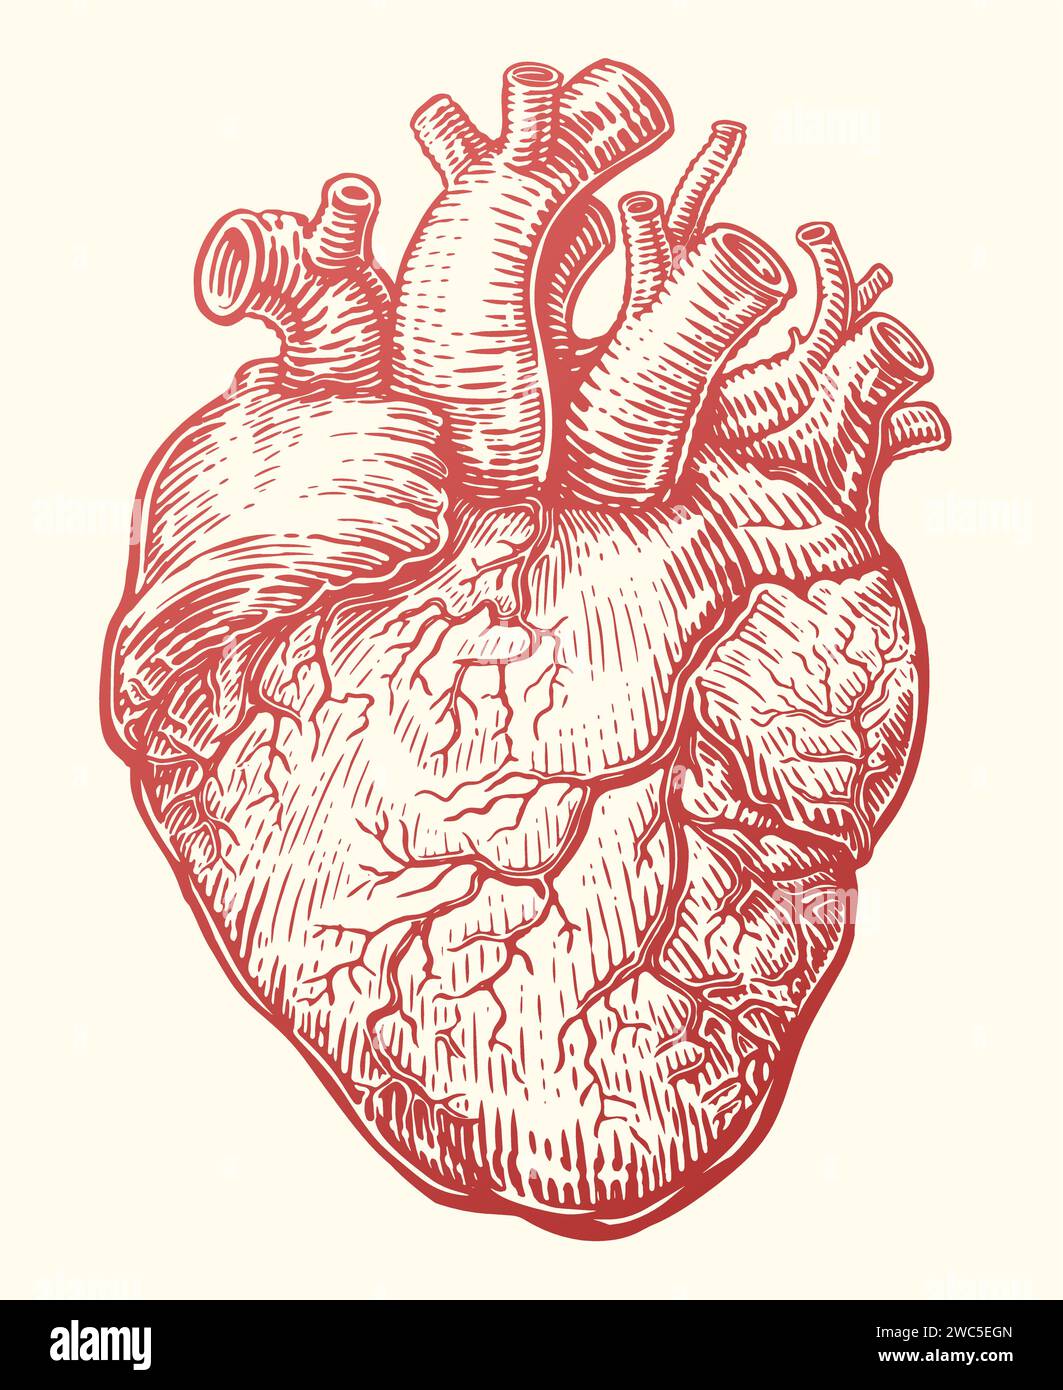 Schizzo del cuore. Organo umano anatomico con sistema venoso, battito cardiaco. Illustrazione vettoriale disegnata a mano Illustrazione Vettoriale